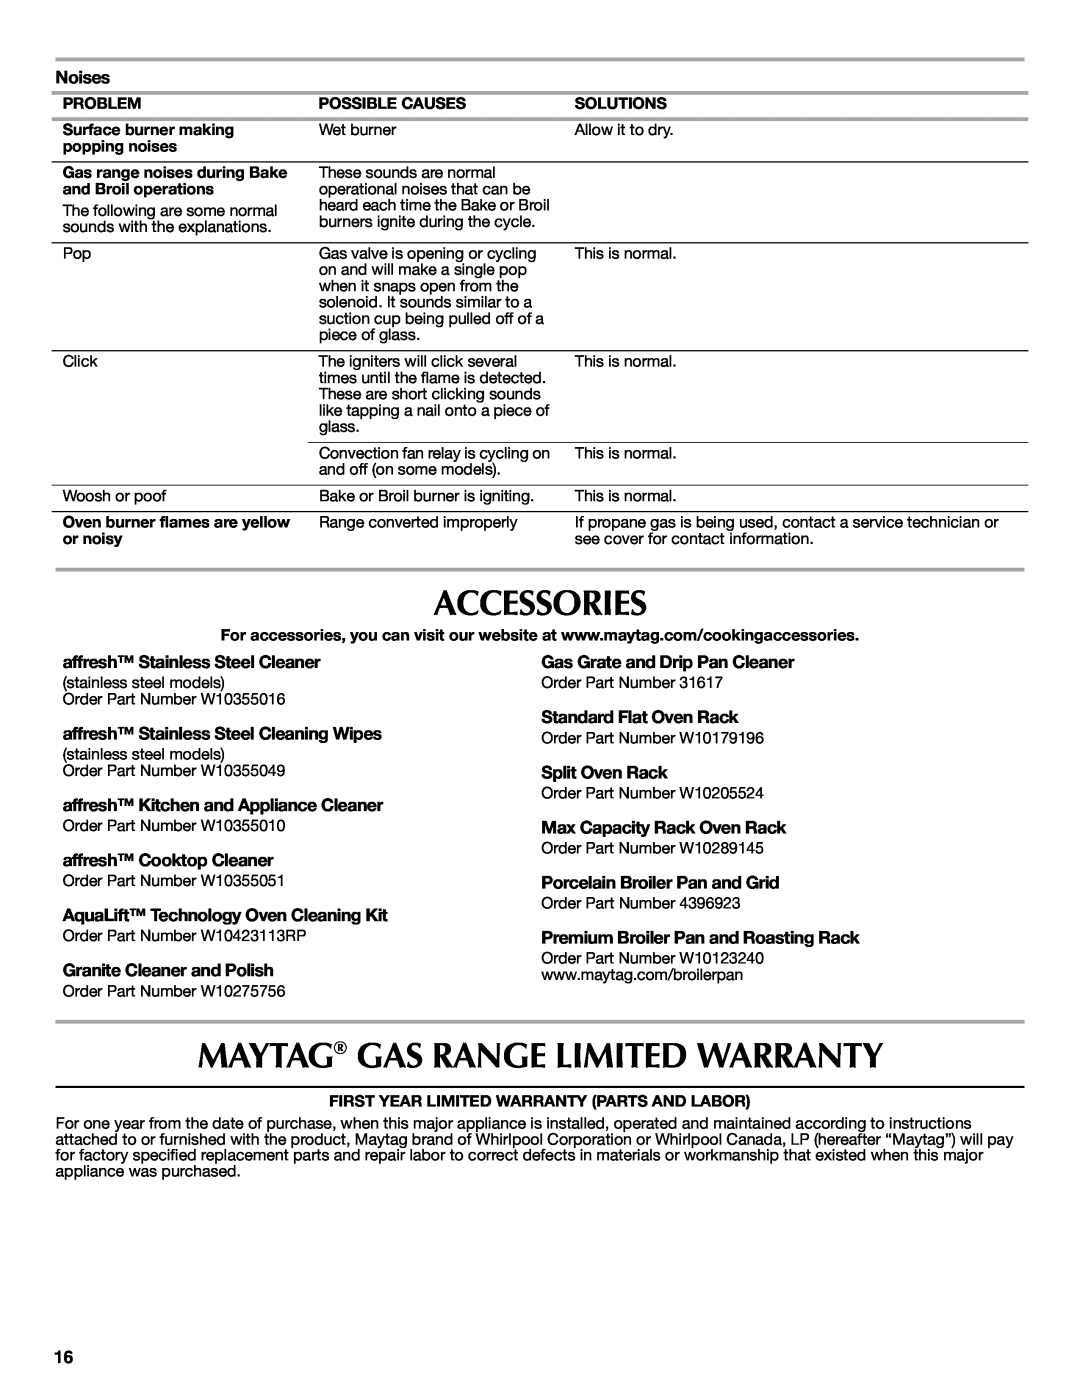 Maytag W10399029B warranty Accessories, Maytag Gas Range Limited Warranty 